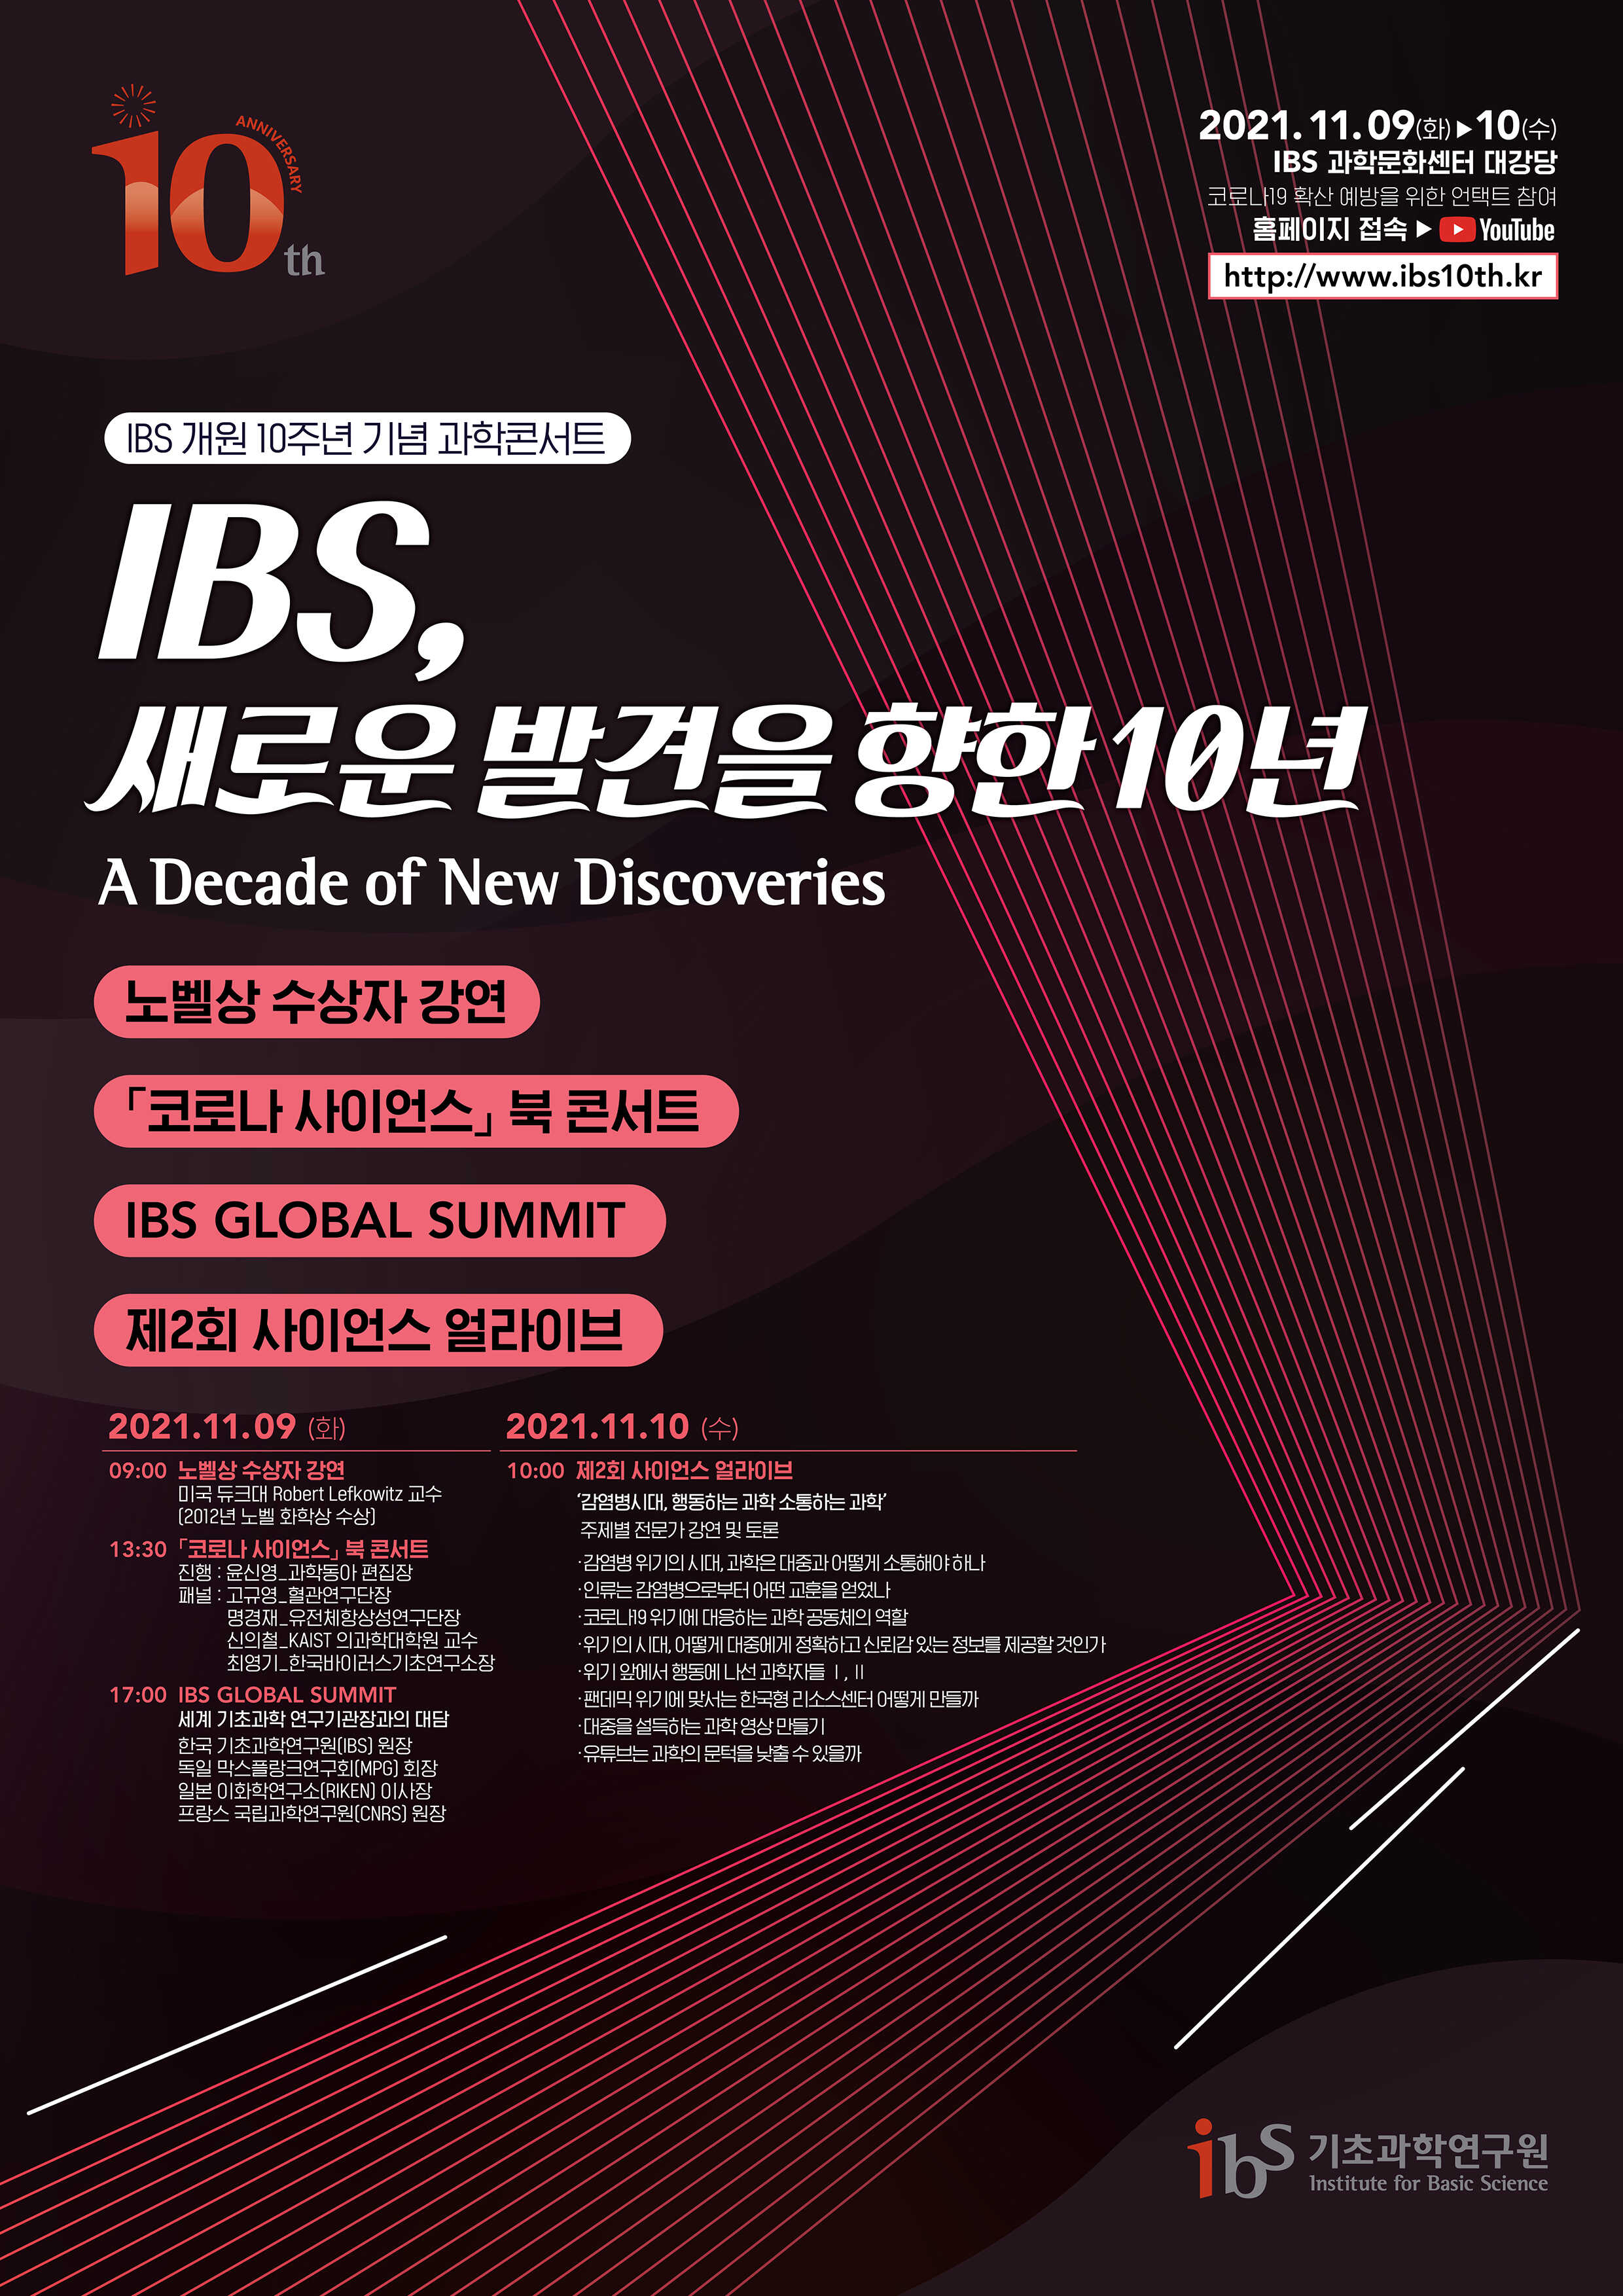 IBS 10주년 과학 콘서트 홍보 포스터이미지로서 자세한 내용은 하단에 위치해 있습니다.